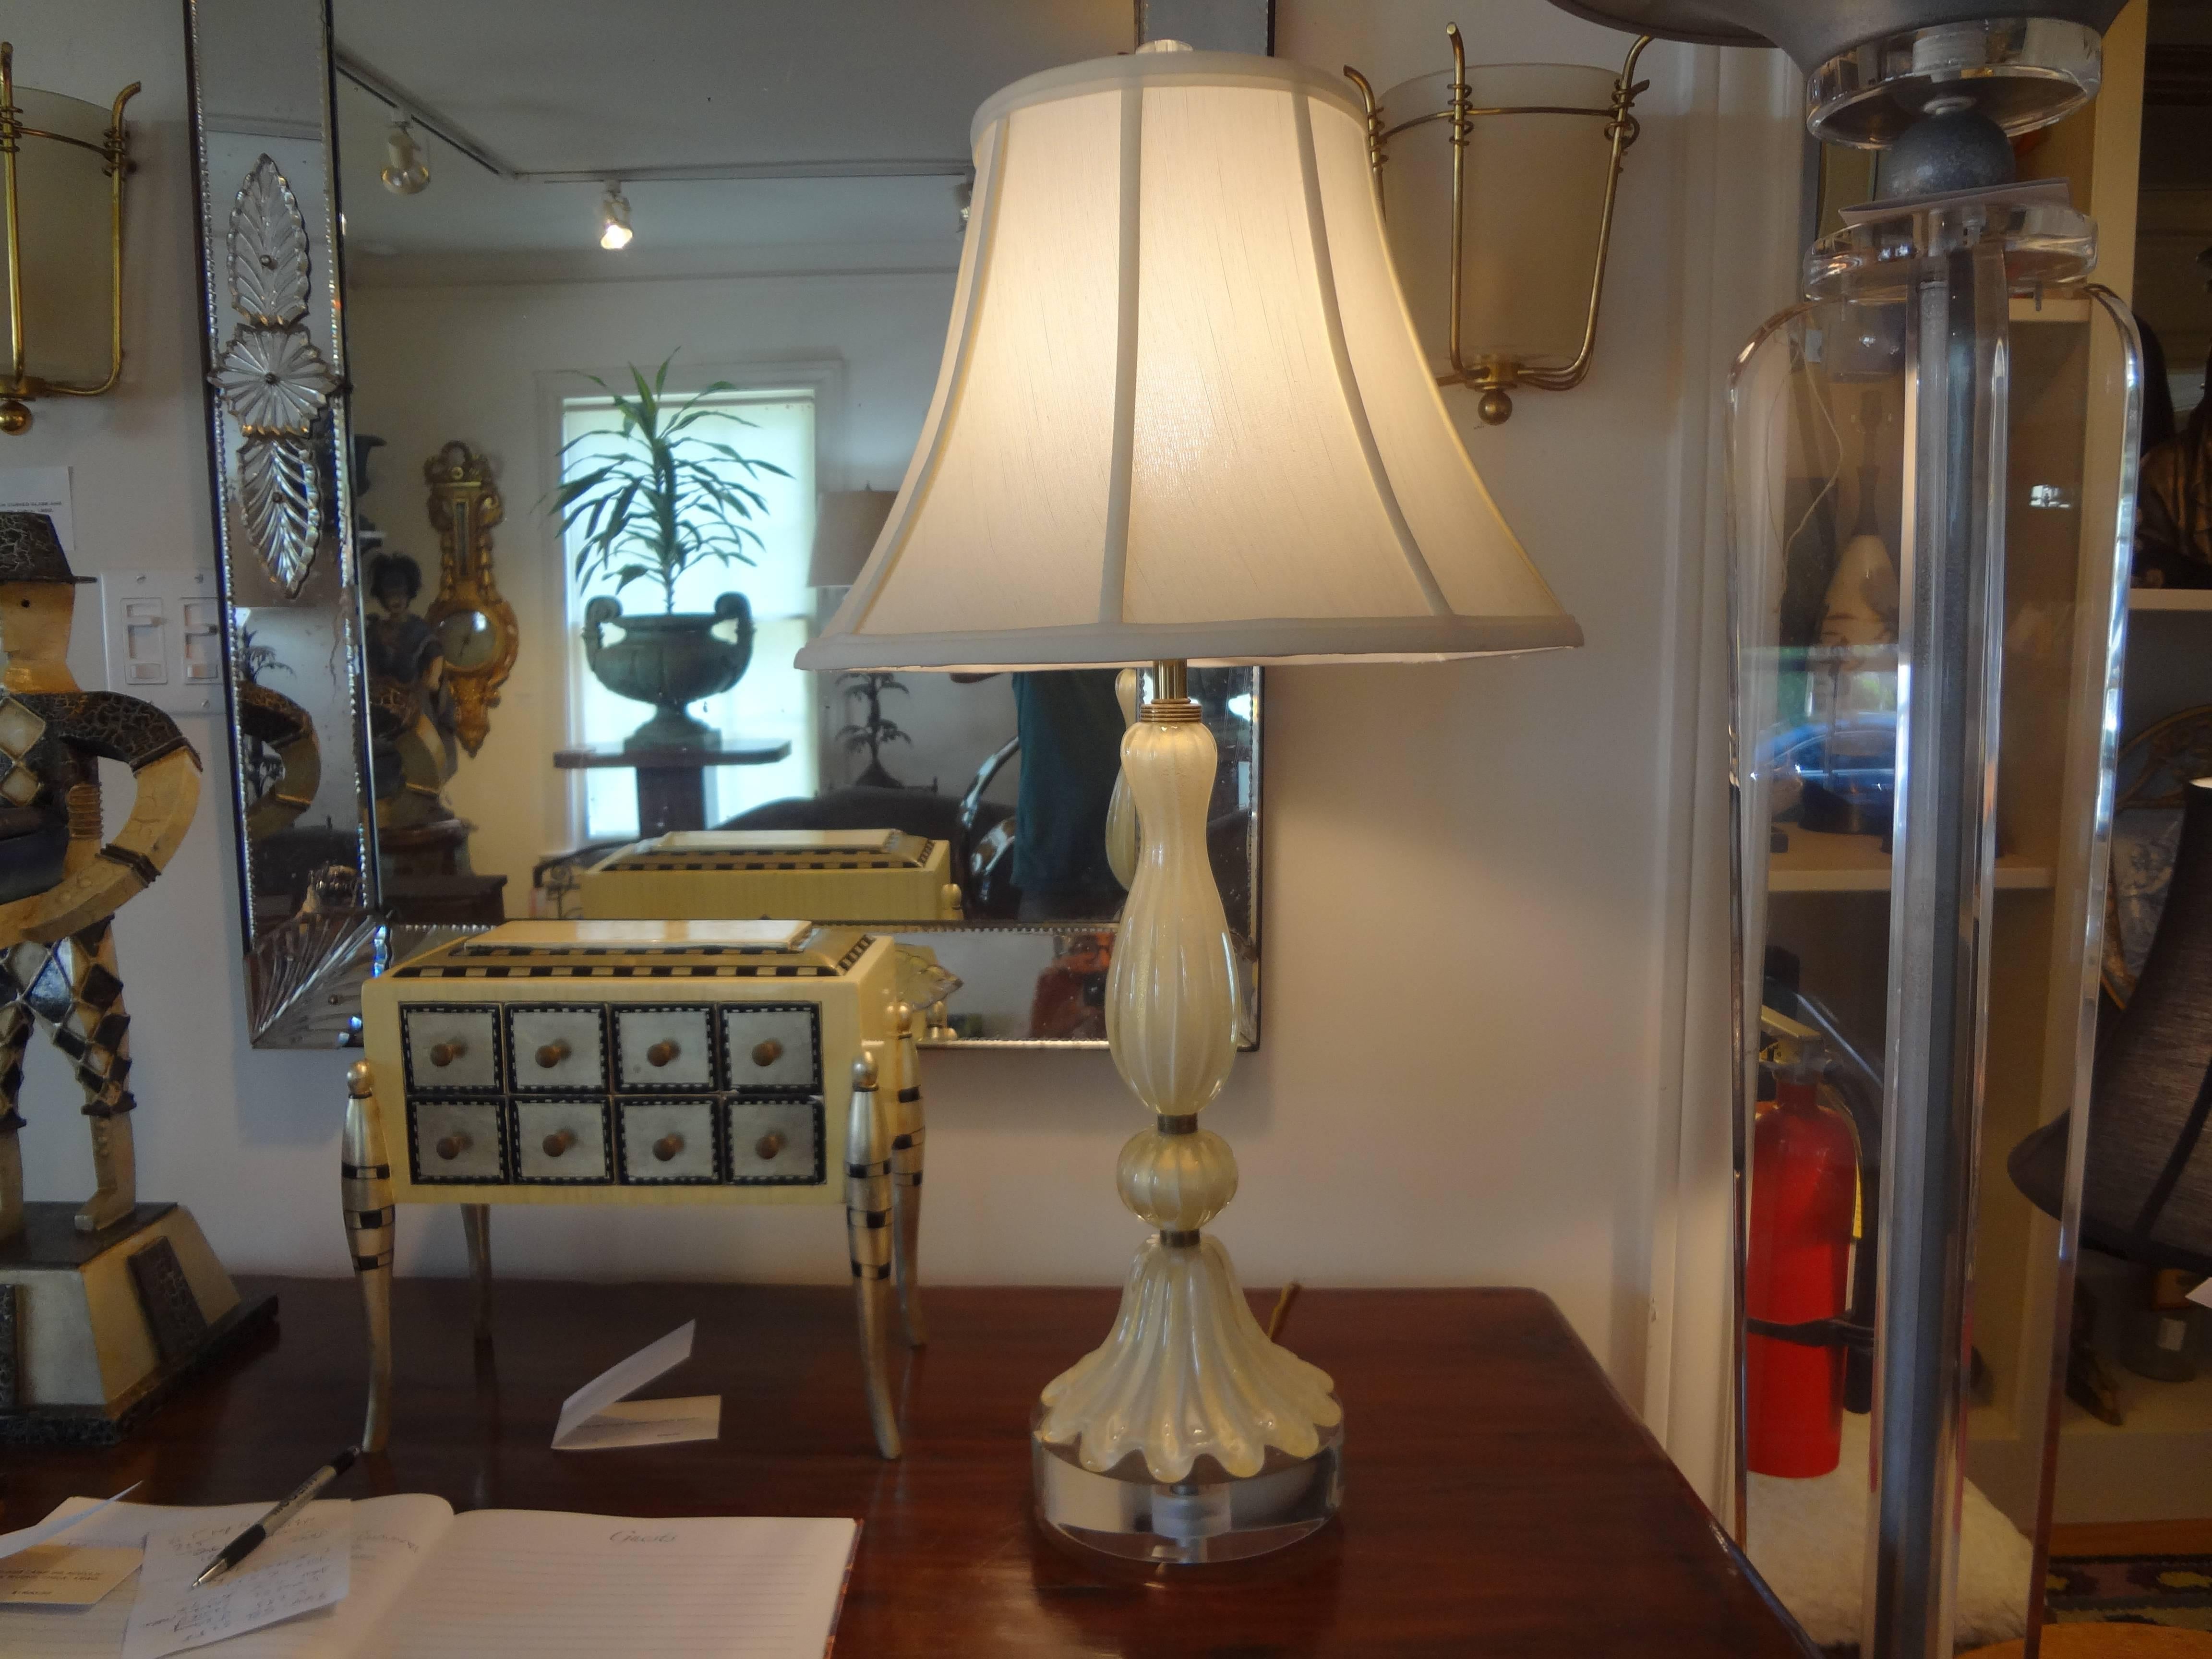 Lampe aus Murano-Glas, die Barovier zugeschrieben wird.
Italienische Murano-Glaslampe auf Lucit- oder Acrylsockel, die Barovier zugeschrieben wird. Diese Lampe aus venezianischem Glas besteht aus cremefarbenem, goldfarbenem Glas mit Messingakzenten.